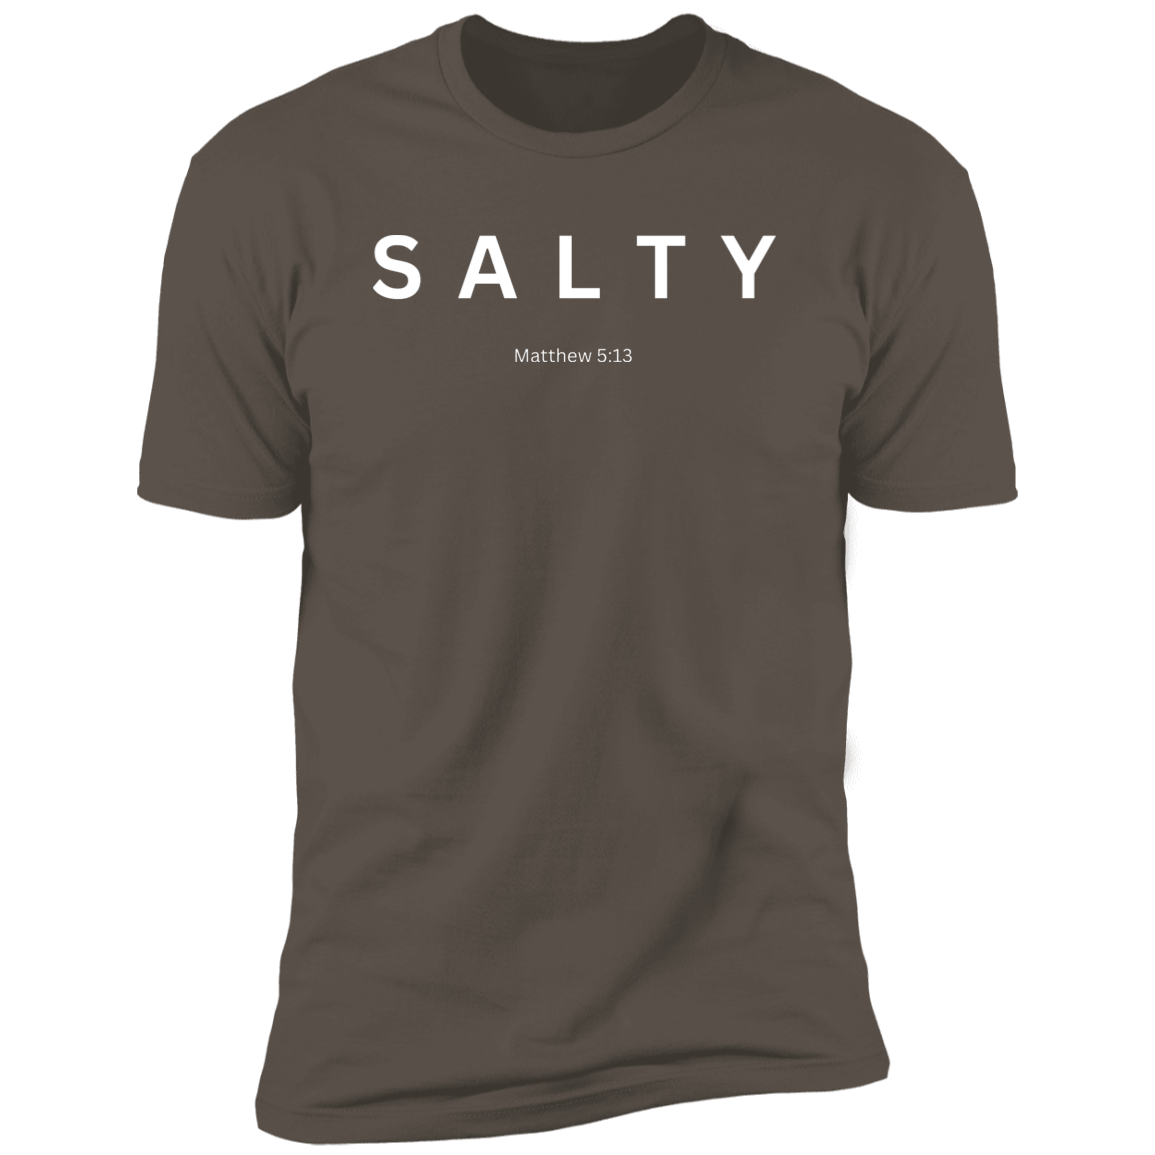 Salty Premium Short Sleeve T-Shirt white lettering